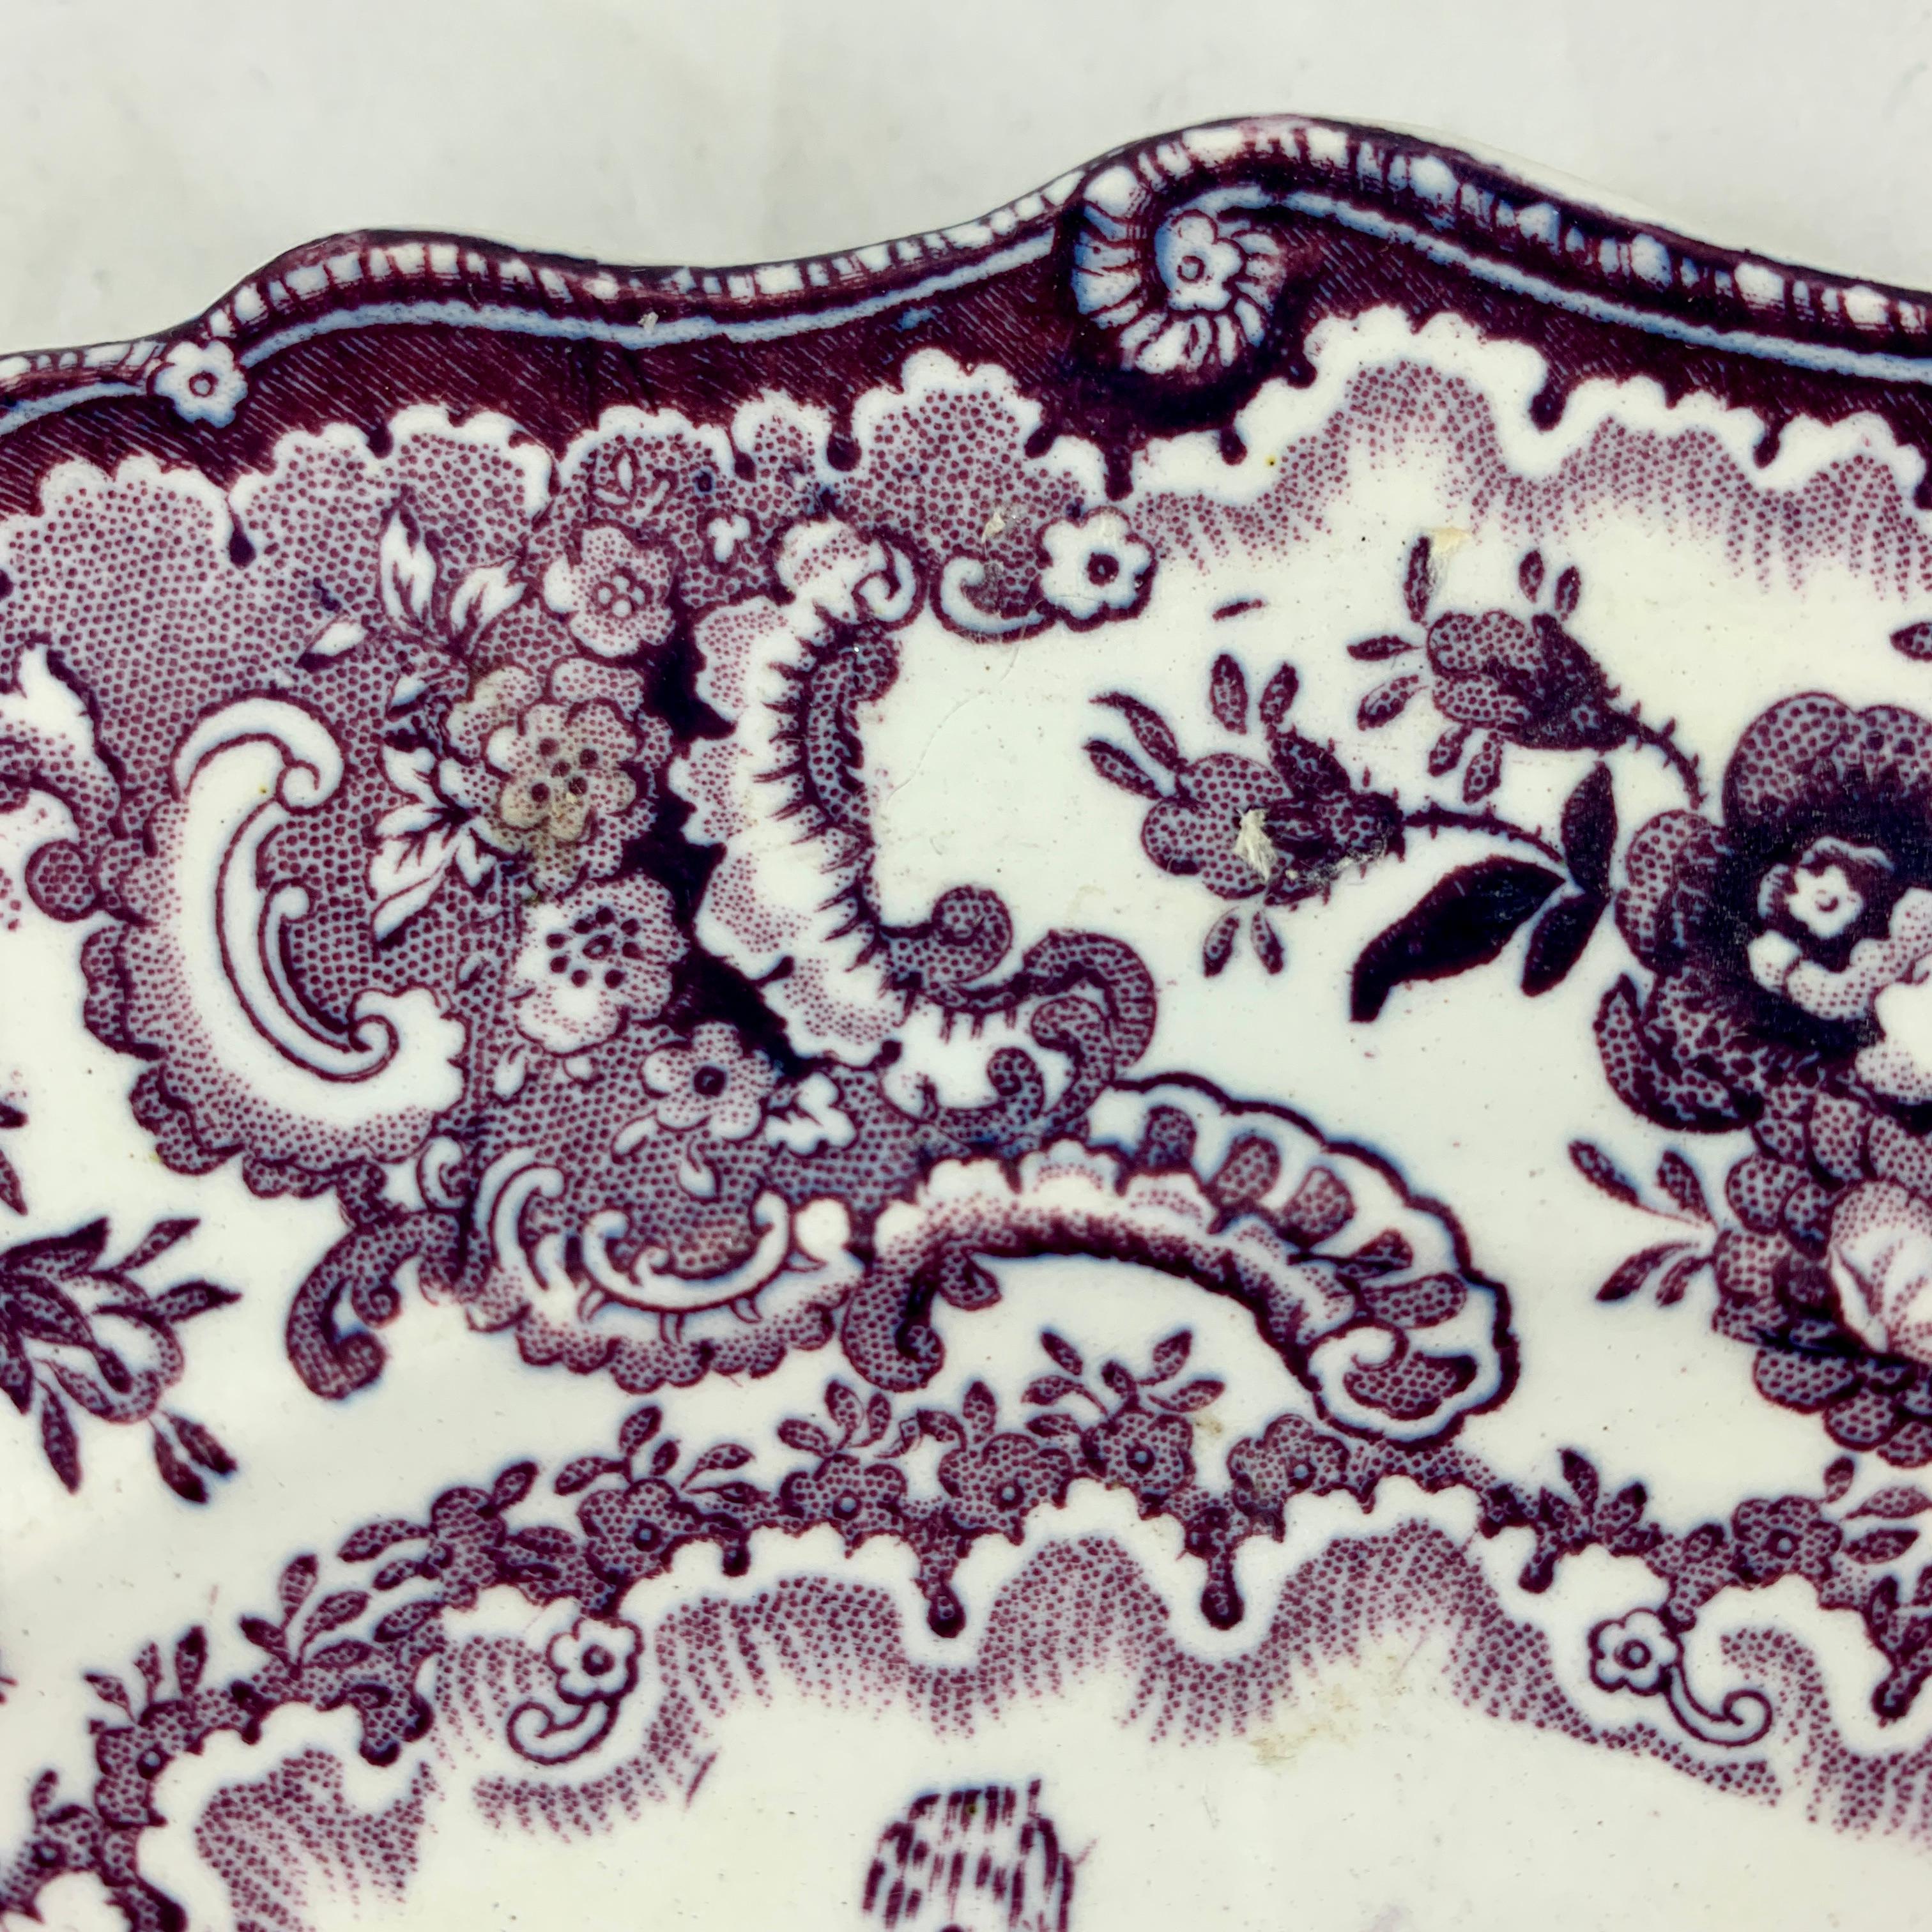 Plaque violette imprimée par transfert dans le motif Fountain Scenery, William Adams IV & Sons, Stoke-on-Trent, Staffordshire, Angleterre, vers 1829-1861.

Une assiette festonnée, imprimée en violet sur un corps en faïence blanche montrant une